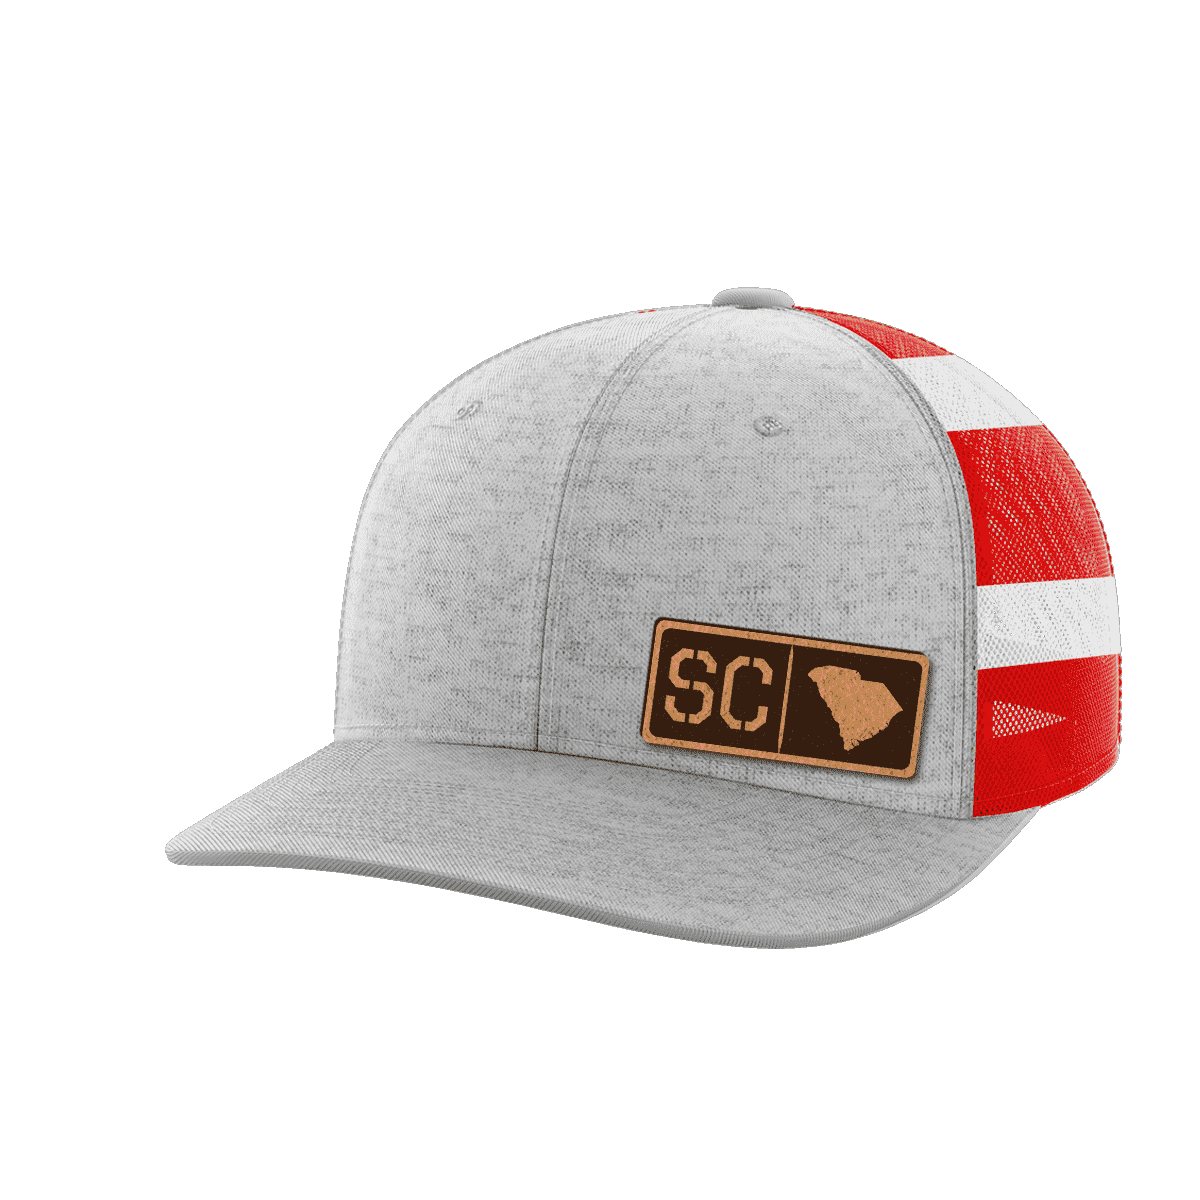 Thumbnail for South Carolina Homegrown Hats - Greater Half